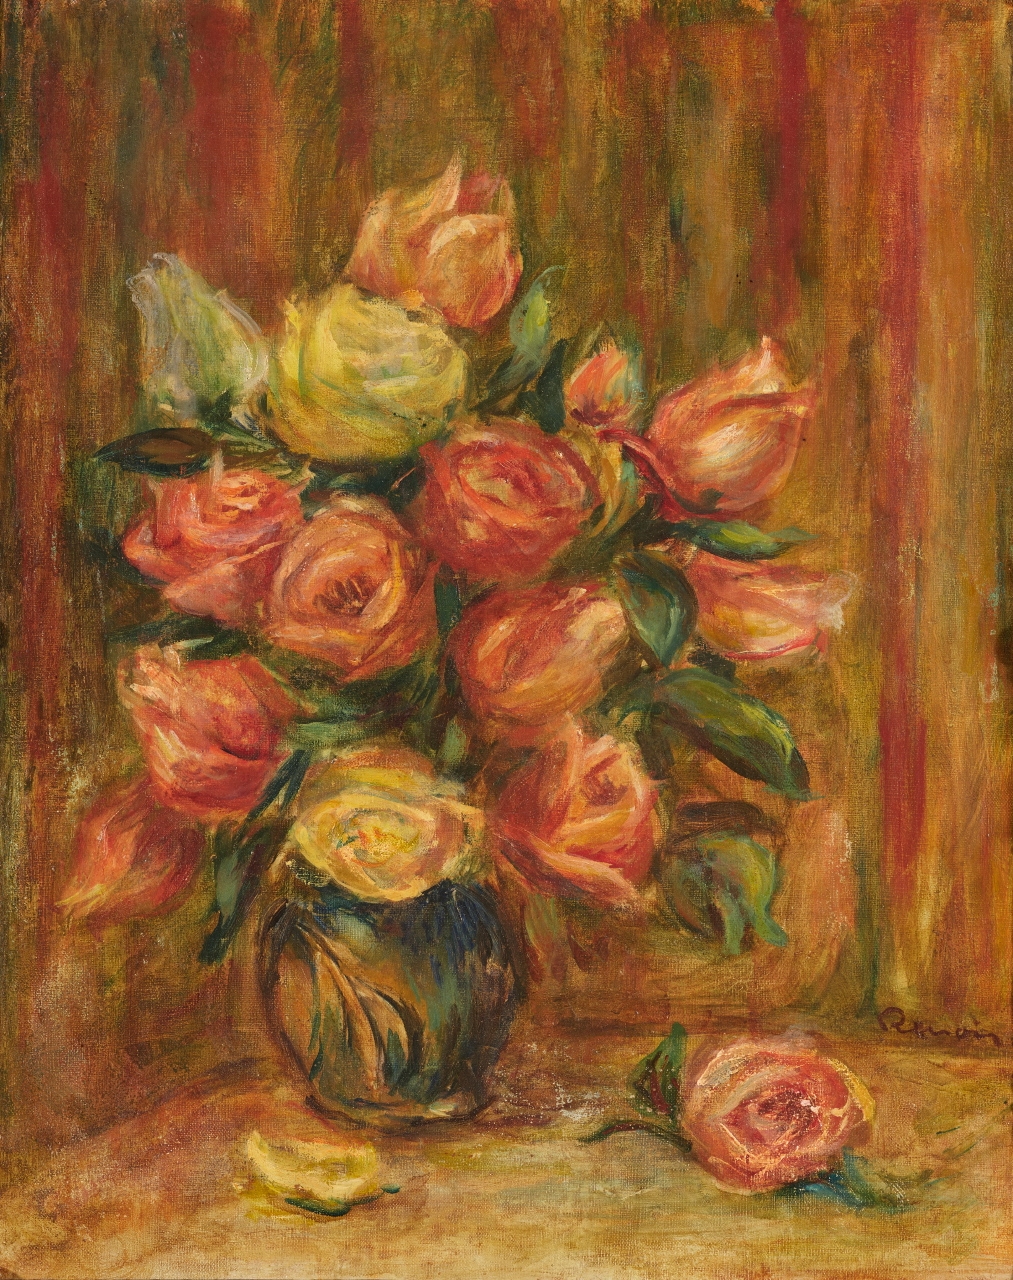 Blumenstillleben by Pierre-Auguste Renoir